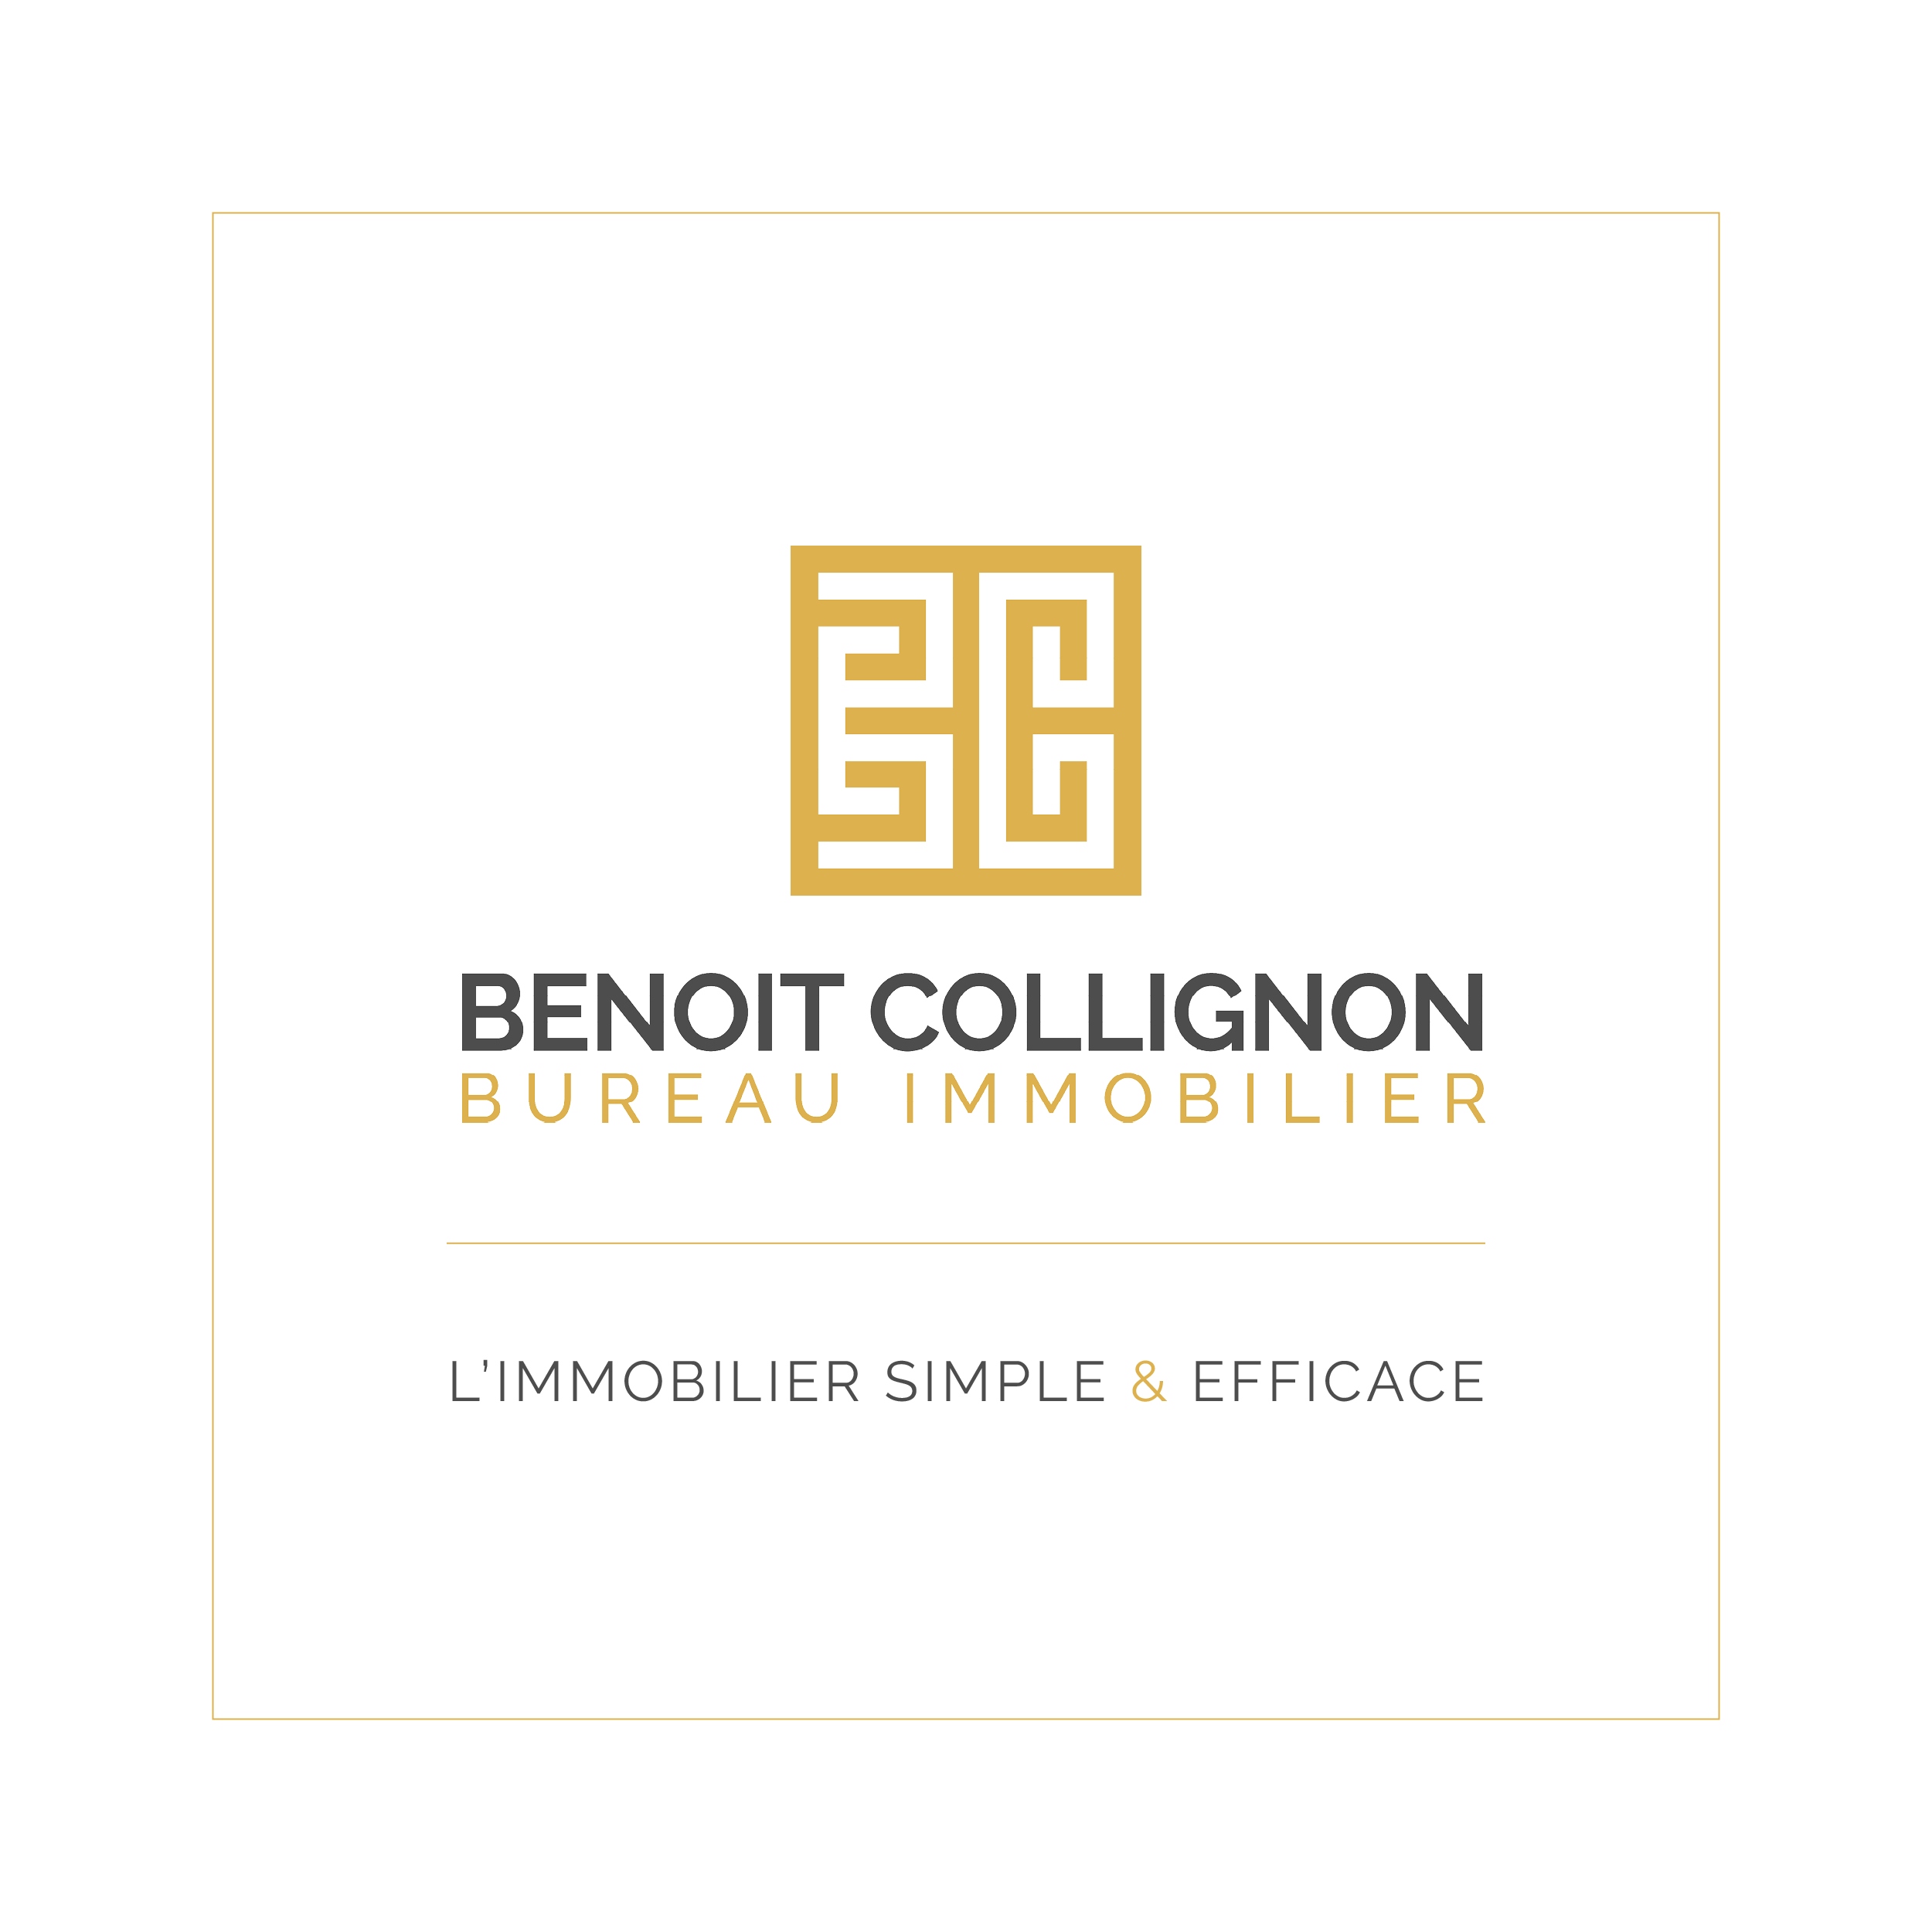 Benoit Collignon Bureau Immobilier